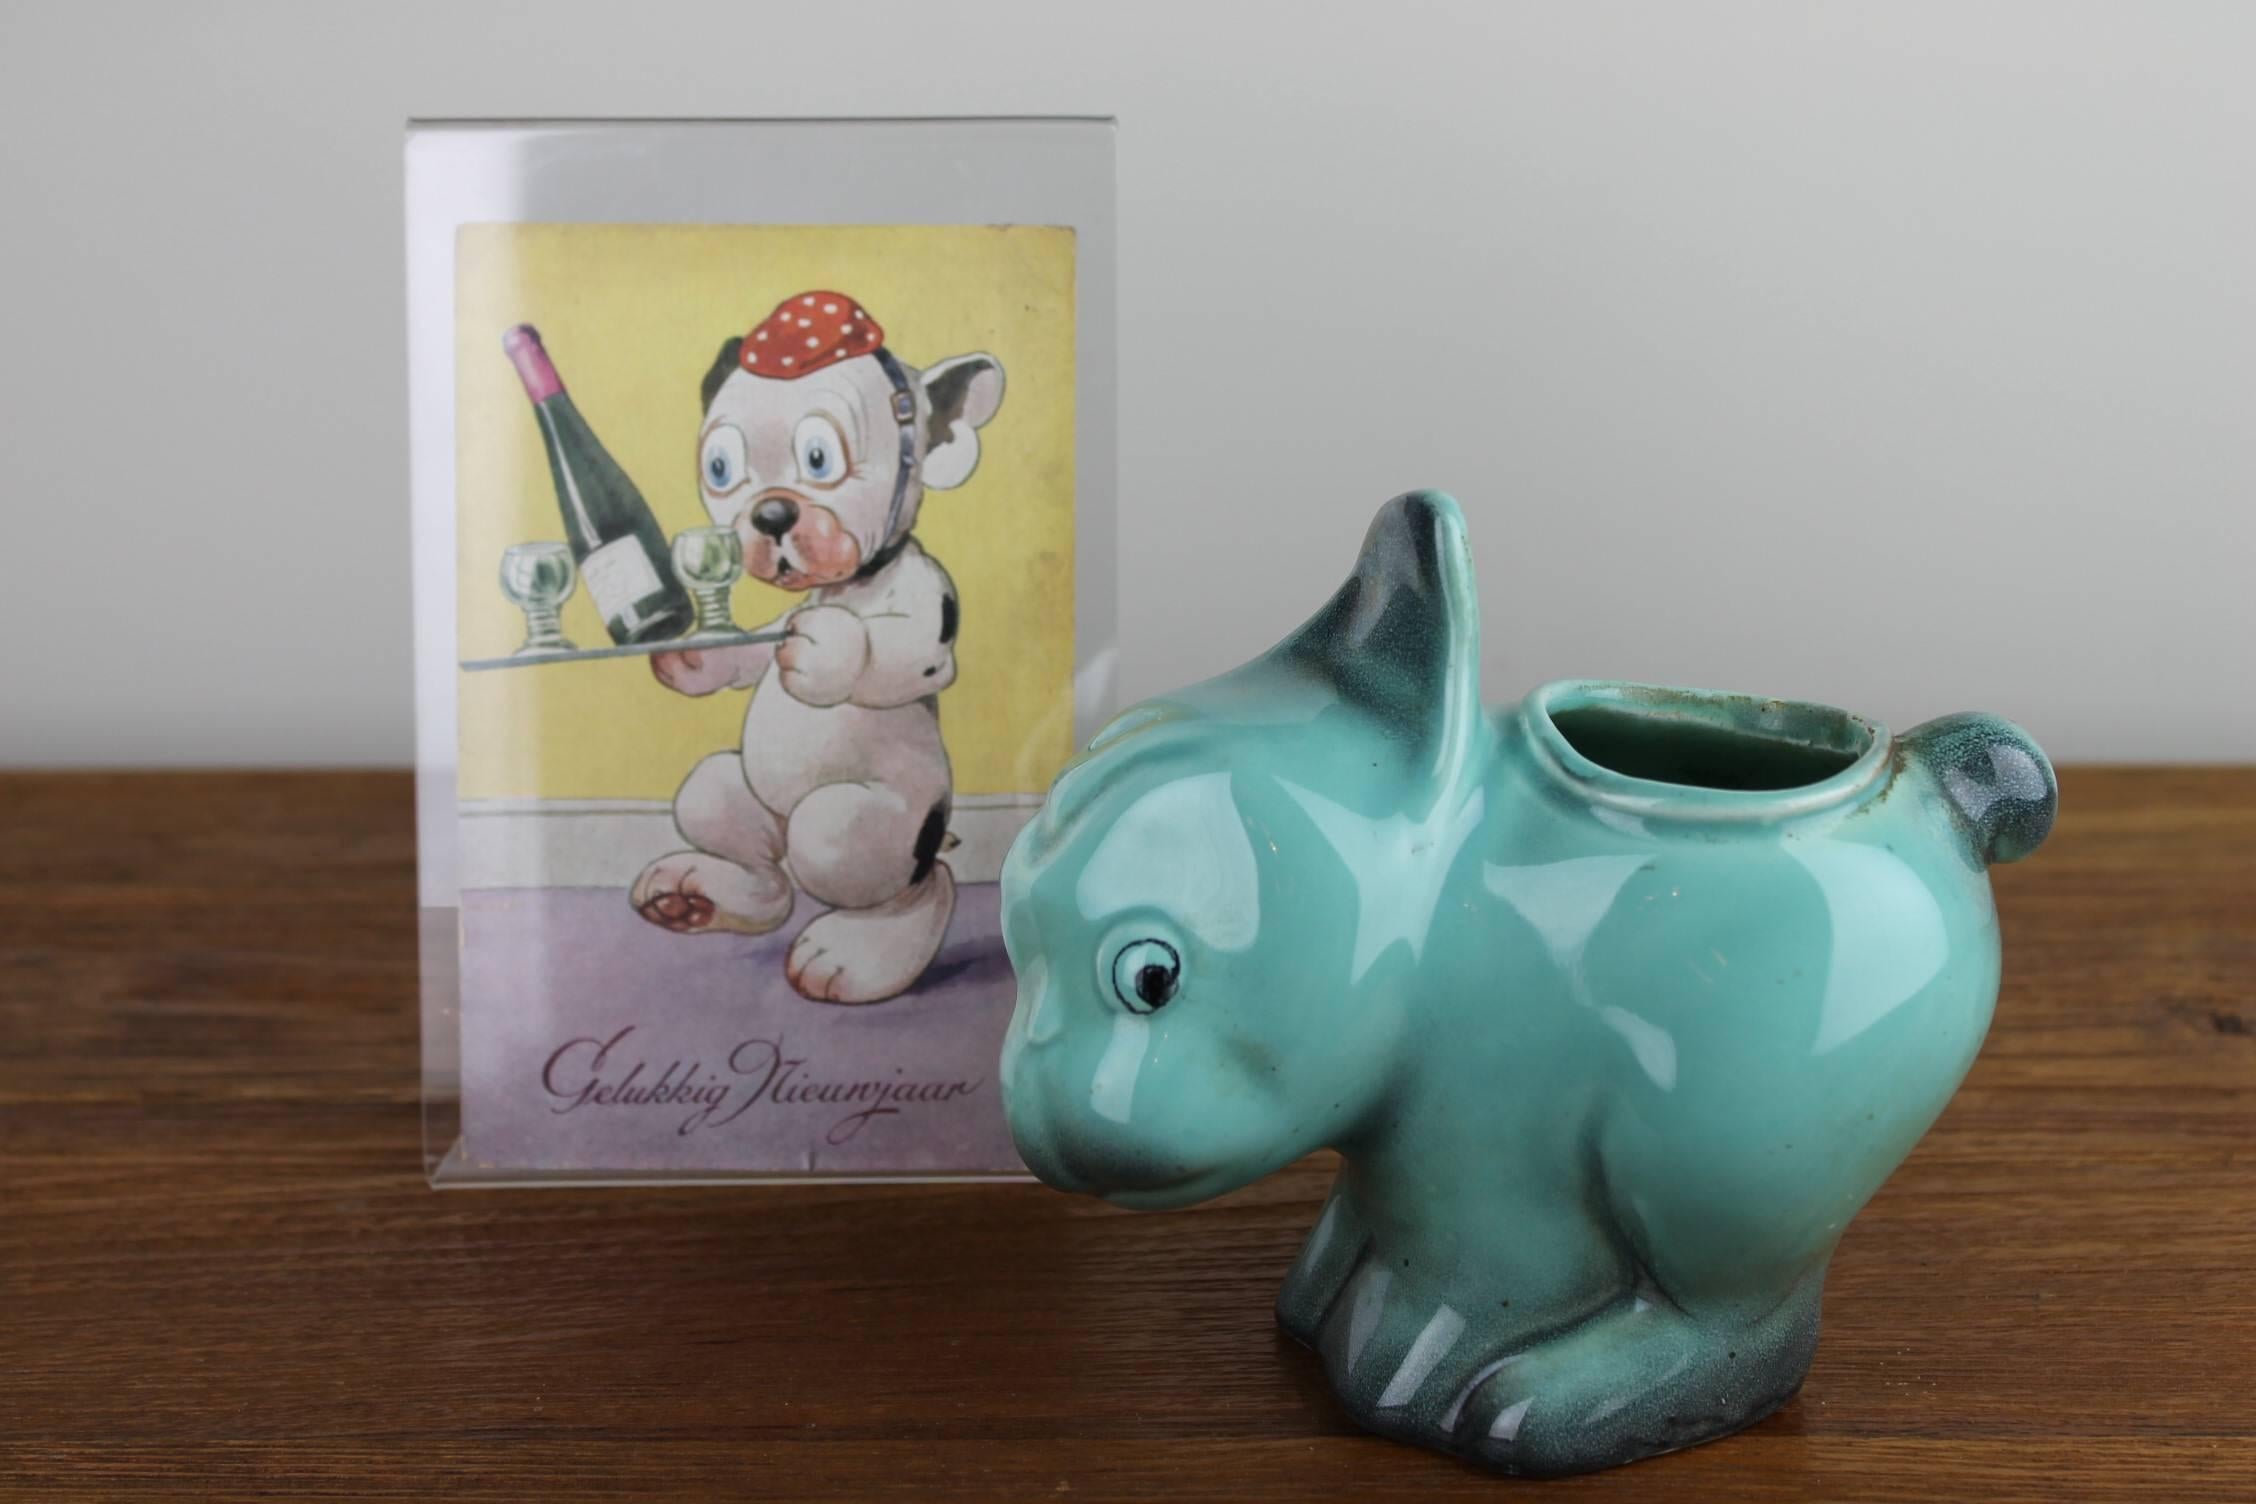 Niedliche Art Deco Bulldogge oder Bonzo Karikatur von Faiencerie Thulin Belgien. 
Die Skulptur Comical Dog oder Dog Planter stammt aus den 1930er Jahren.
Es handelt sich um eine grüne, handbemalte, glasierte Keramikskulptur mit der Nummer 87 und der